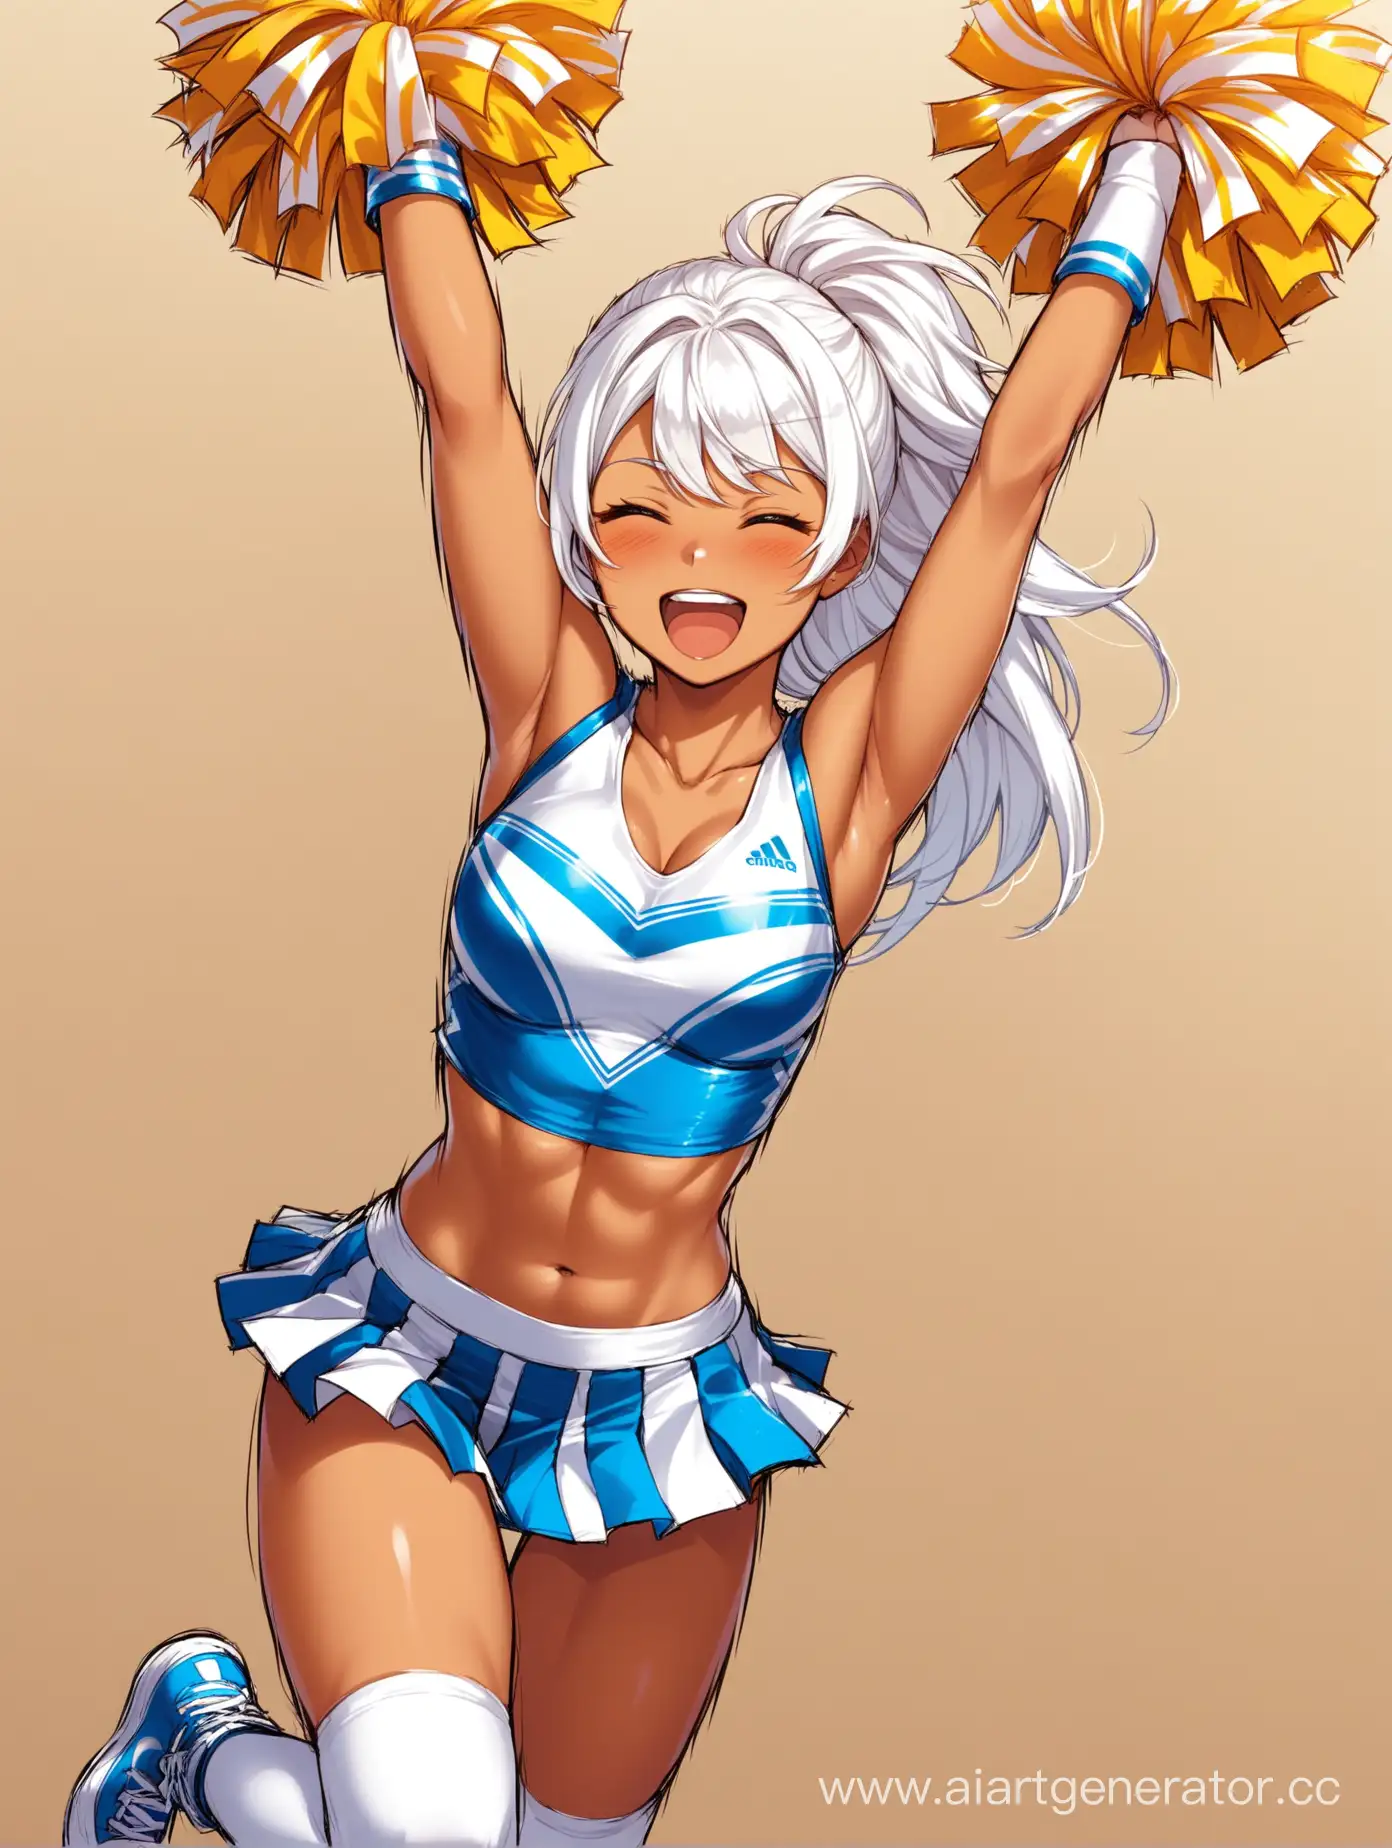 tanned cheerleader fit girl white hair experiencing paradecel pleasure,
